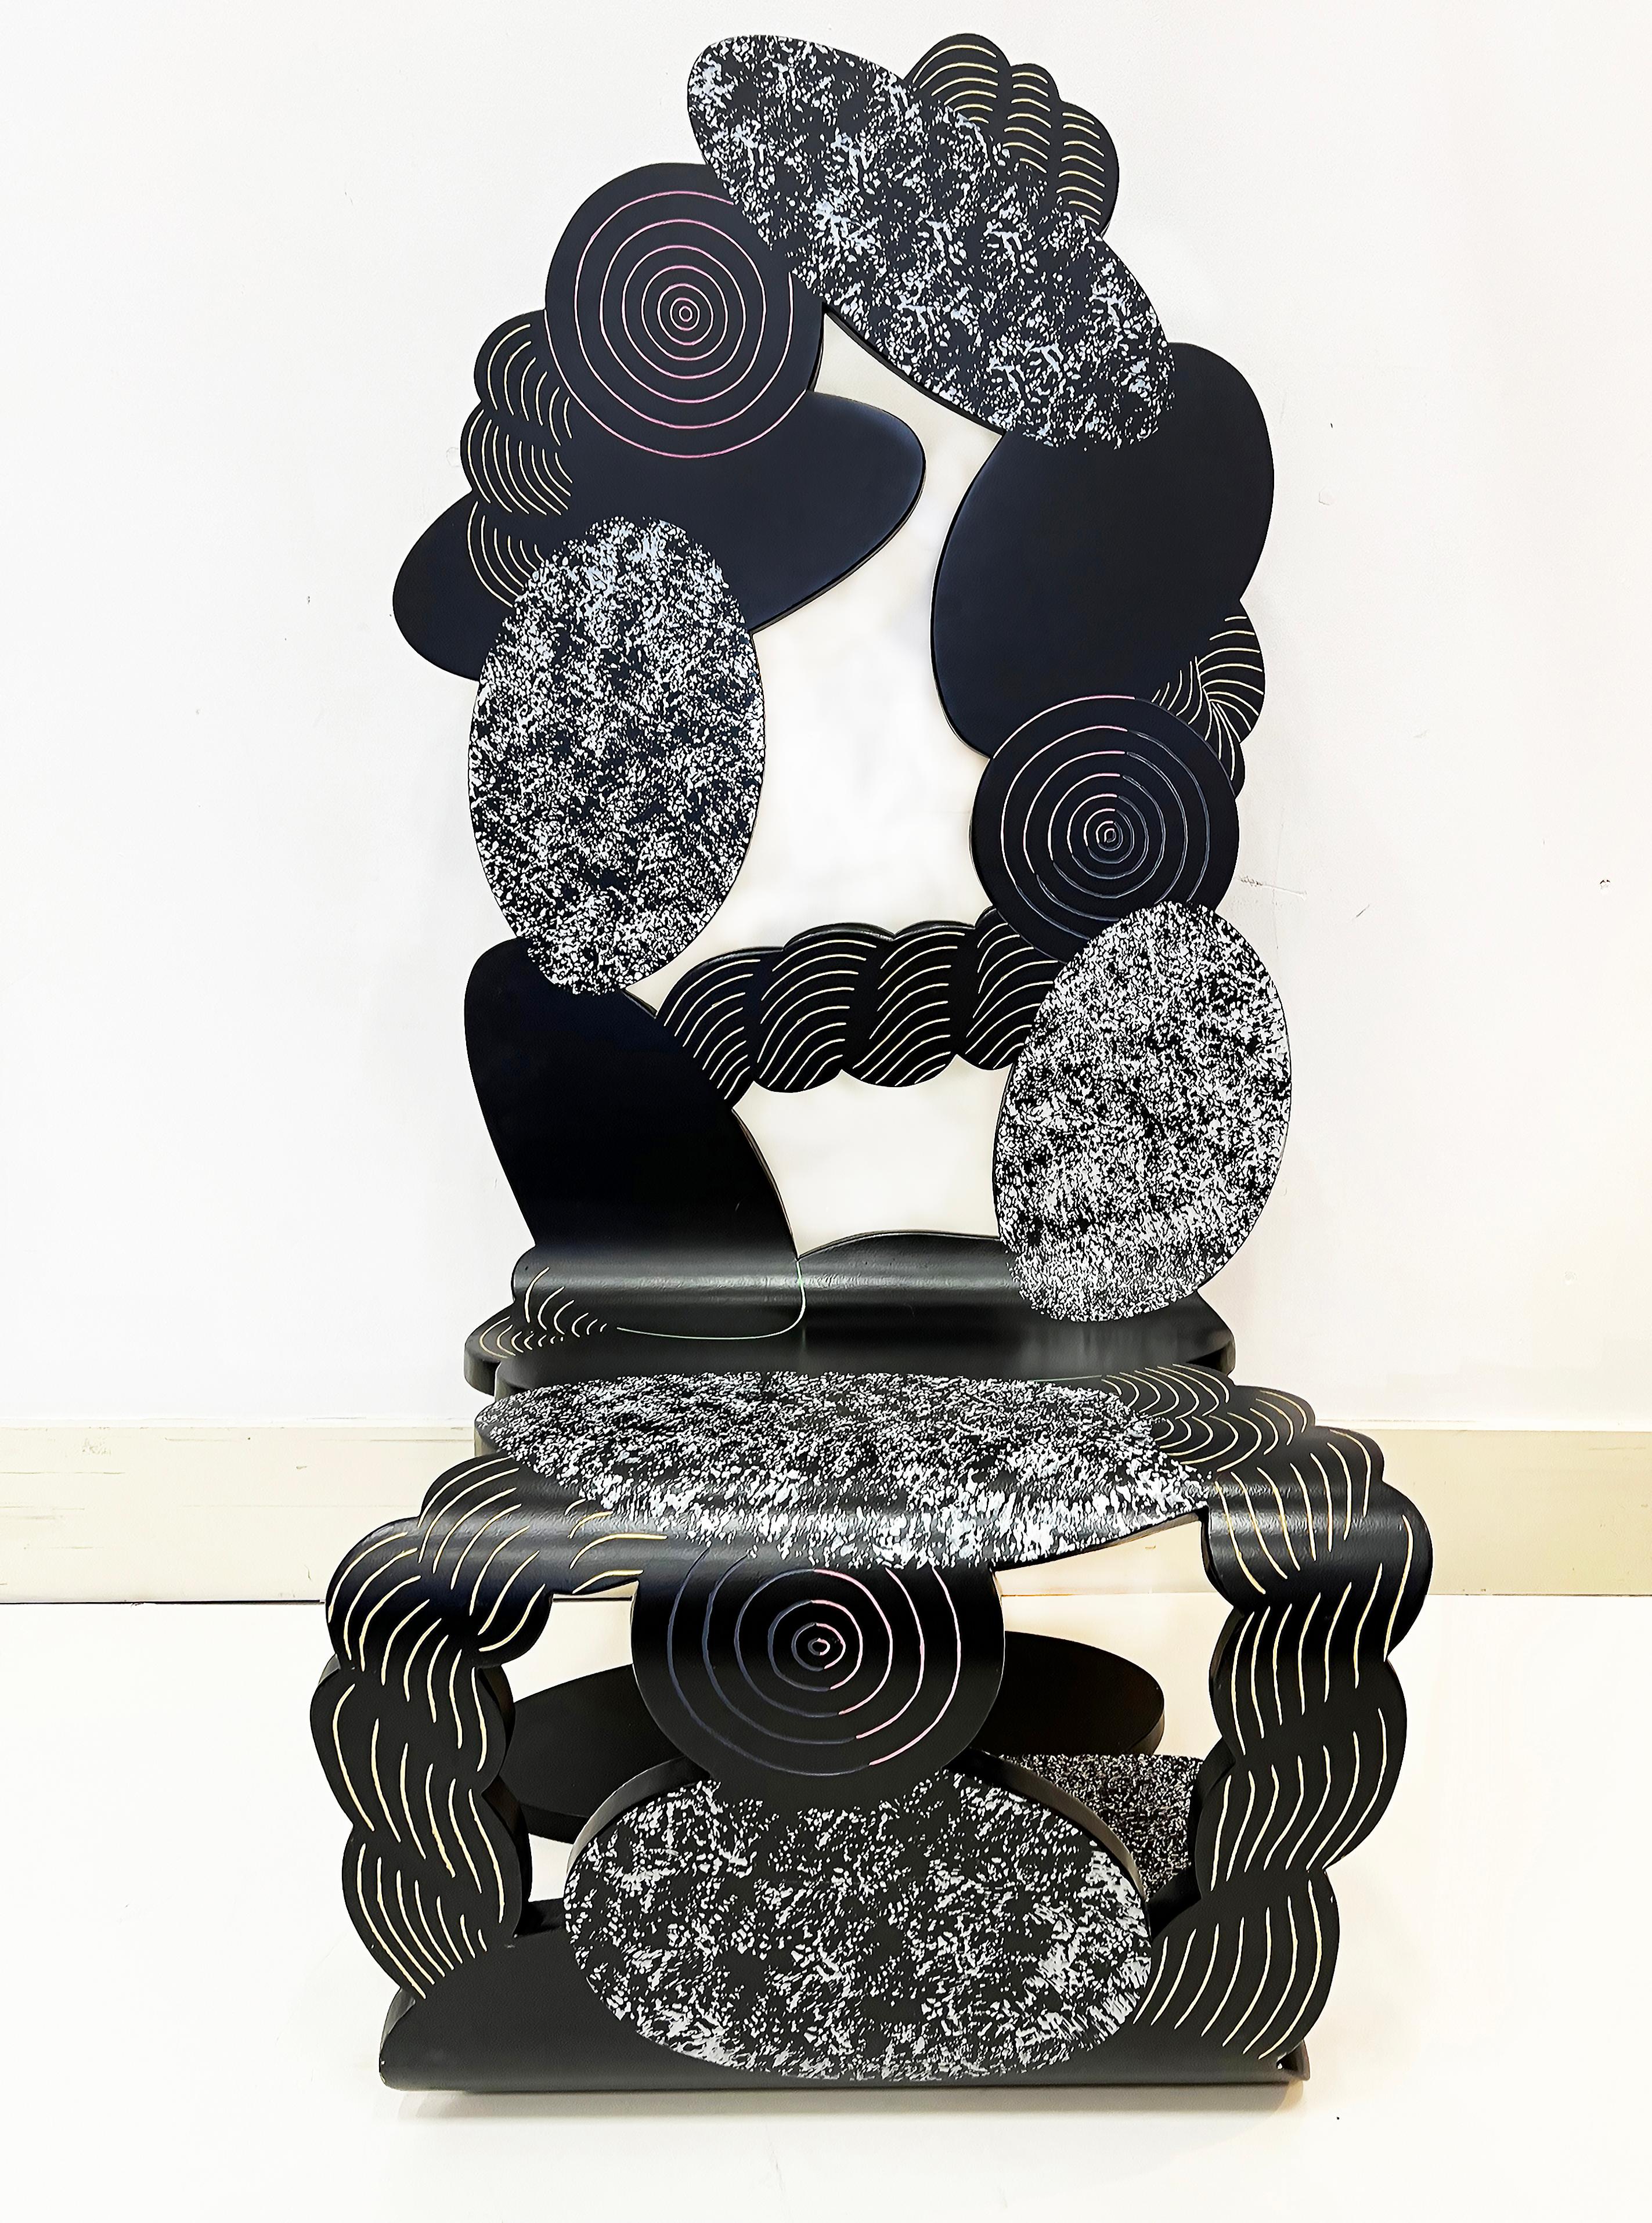 Übergroßer postmoderner skulpturaler Kunststuhl von Alan Siegel aus den Jahren '83-'85 (Handgeschnitzt) im Angebot